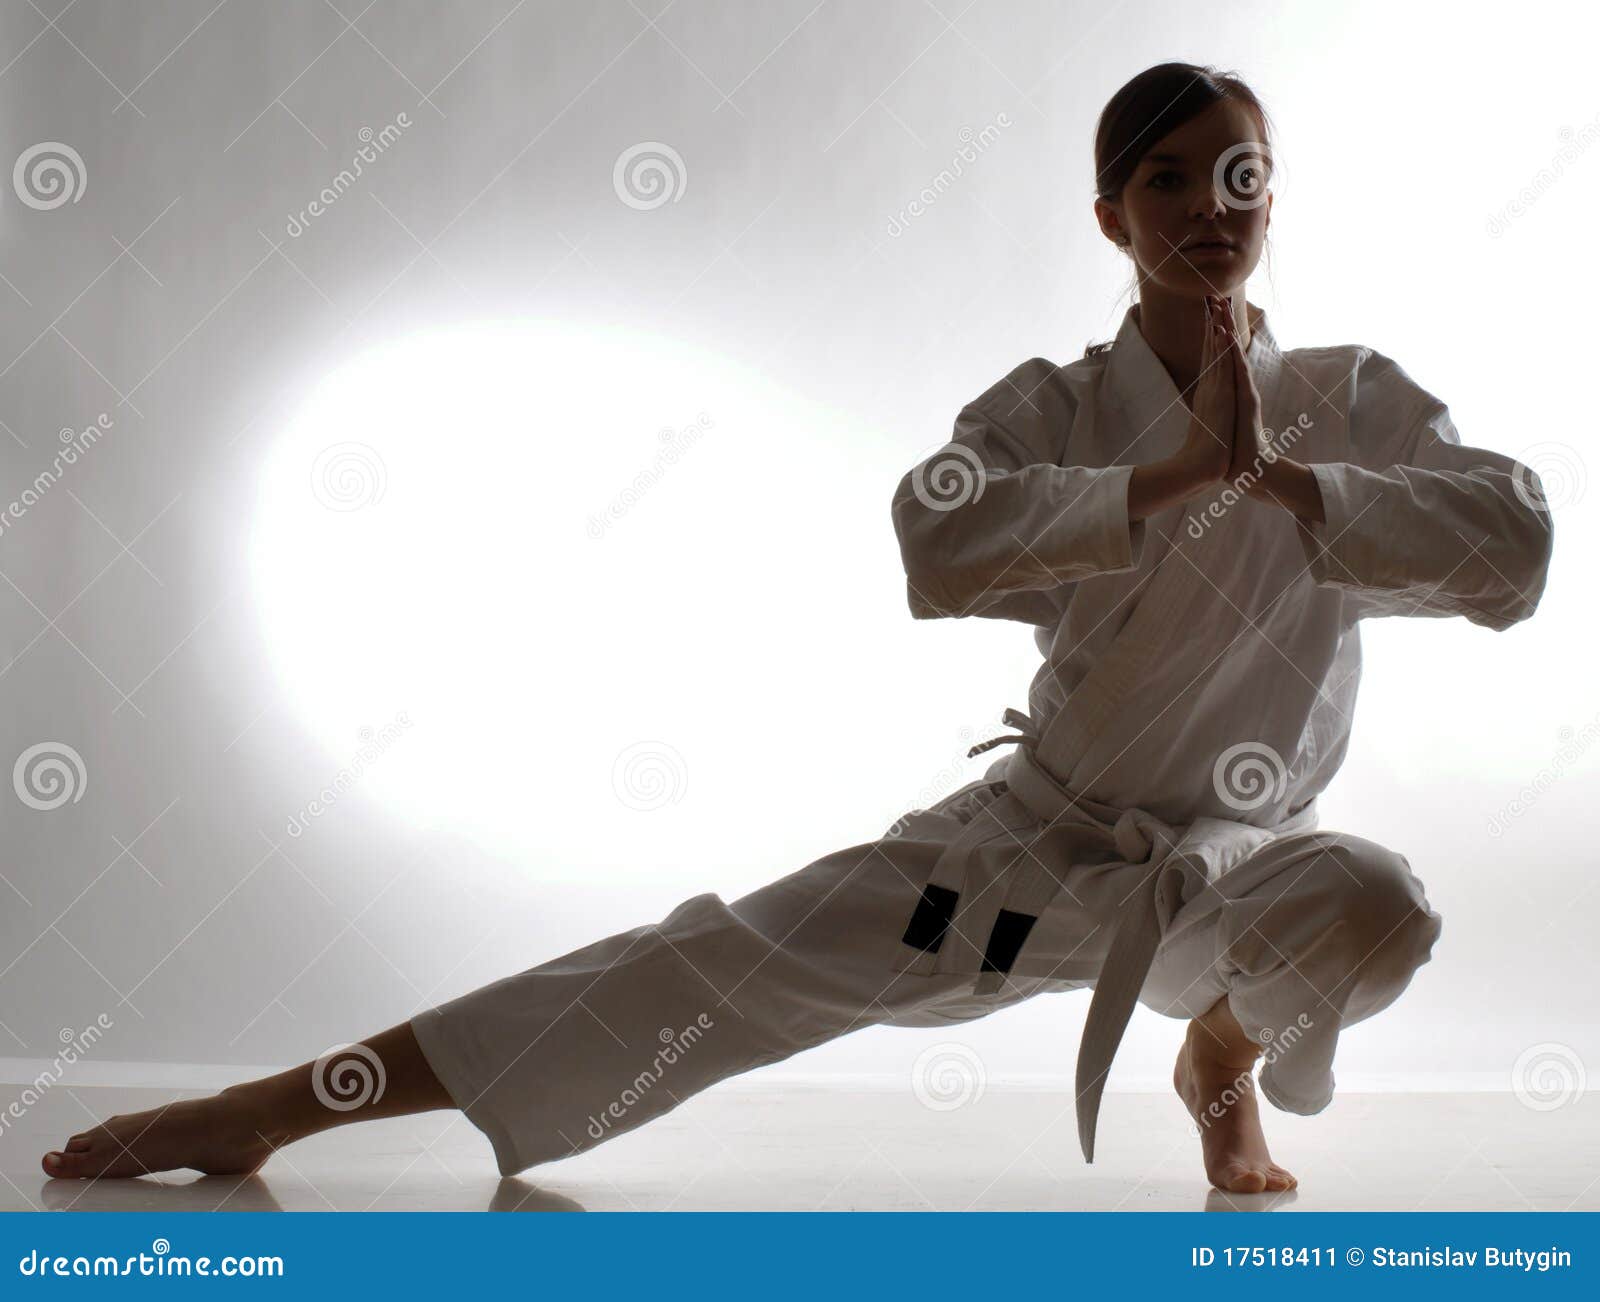 Karate Training Stock Image - Image: 17518411